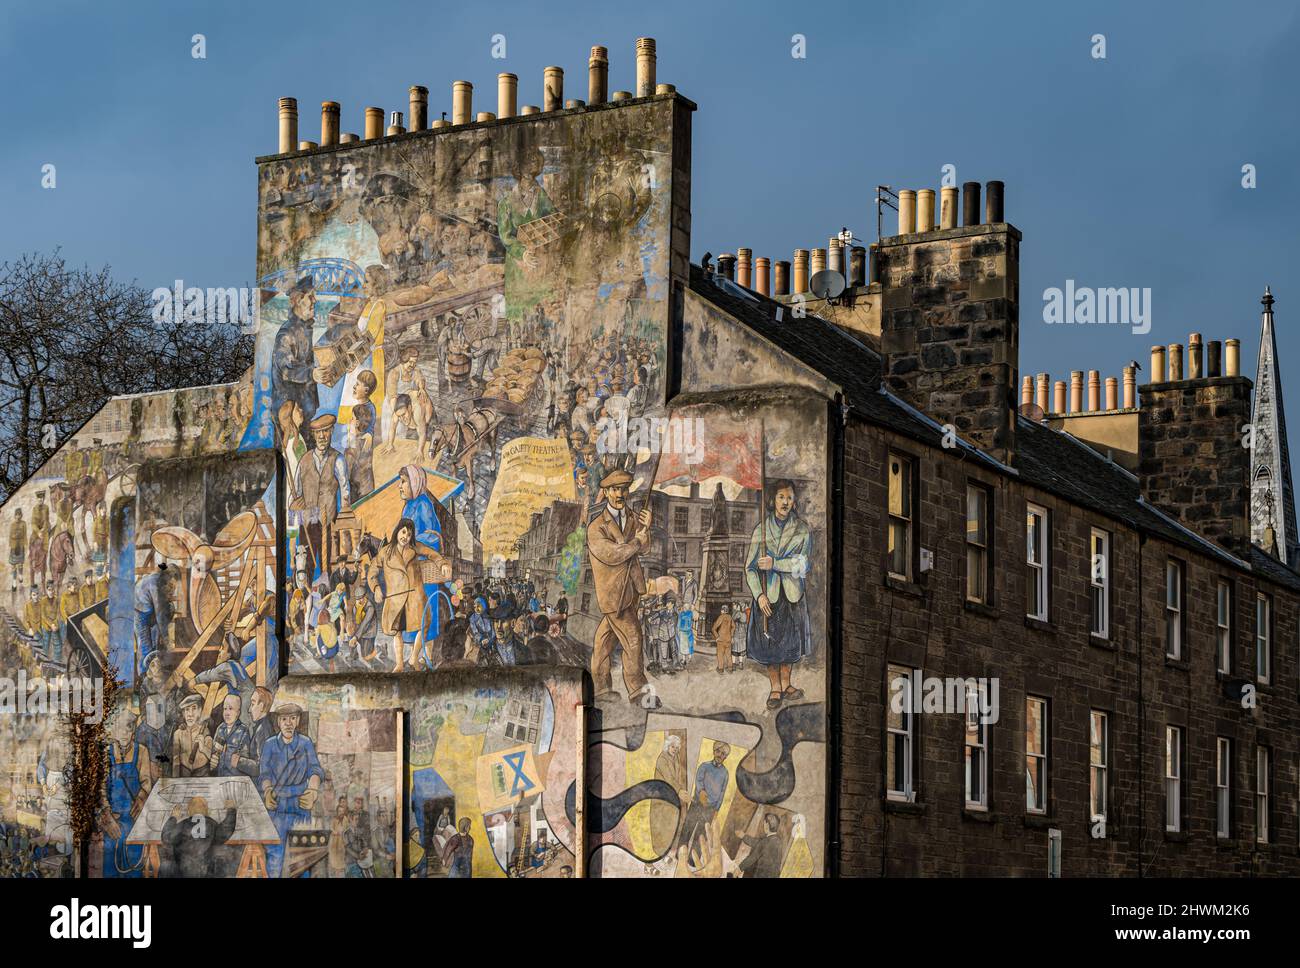 Opere murali di Tim Chalk che illustrano la storia di Leith, Edimburgo, Scozia, Regno Unito Foto Stock